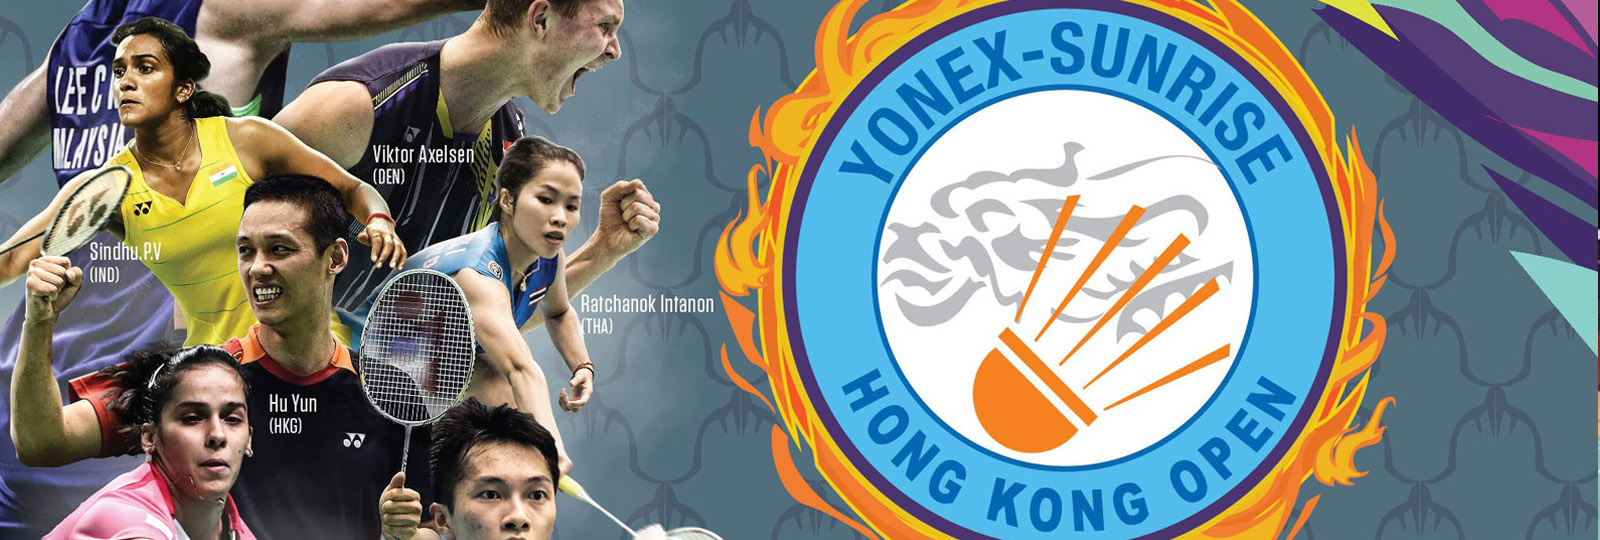 Hong-Kong Open : dernière étape avant la finale